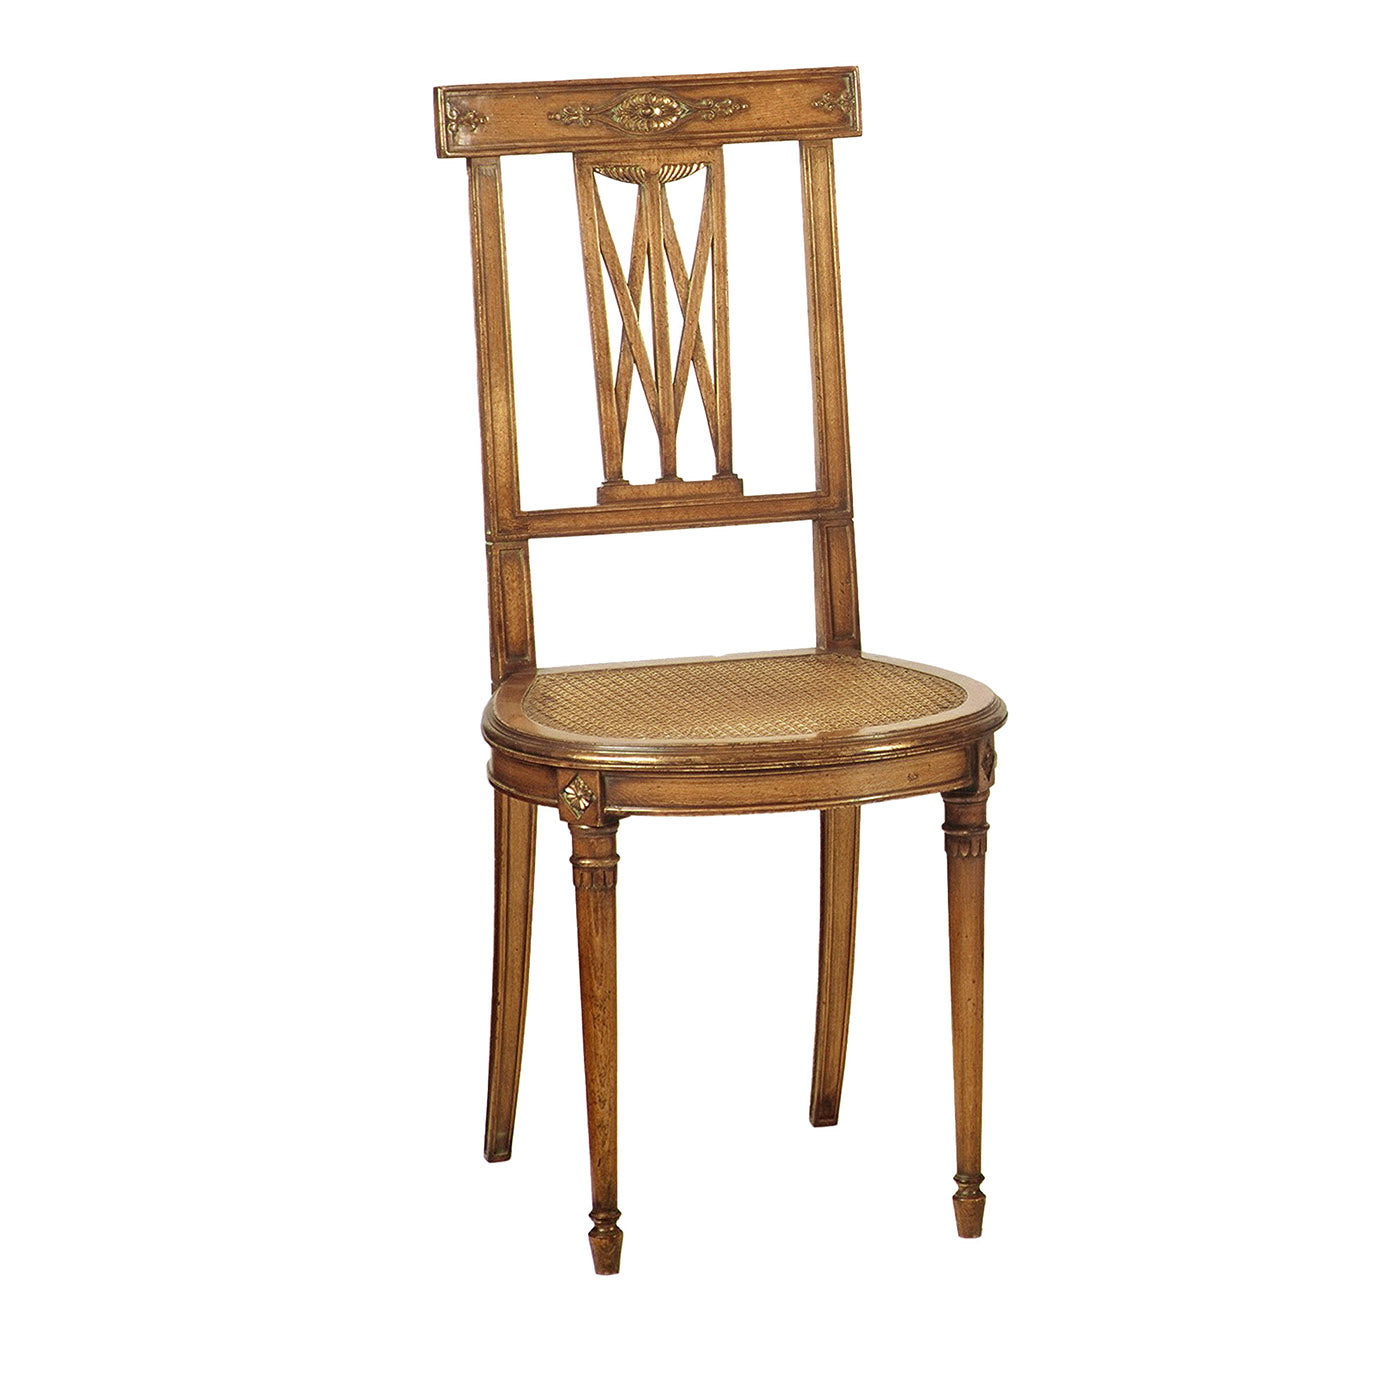 Französischer Empire-Stil Stuhl aus Buche - Hauptansicht